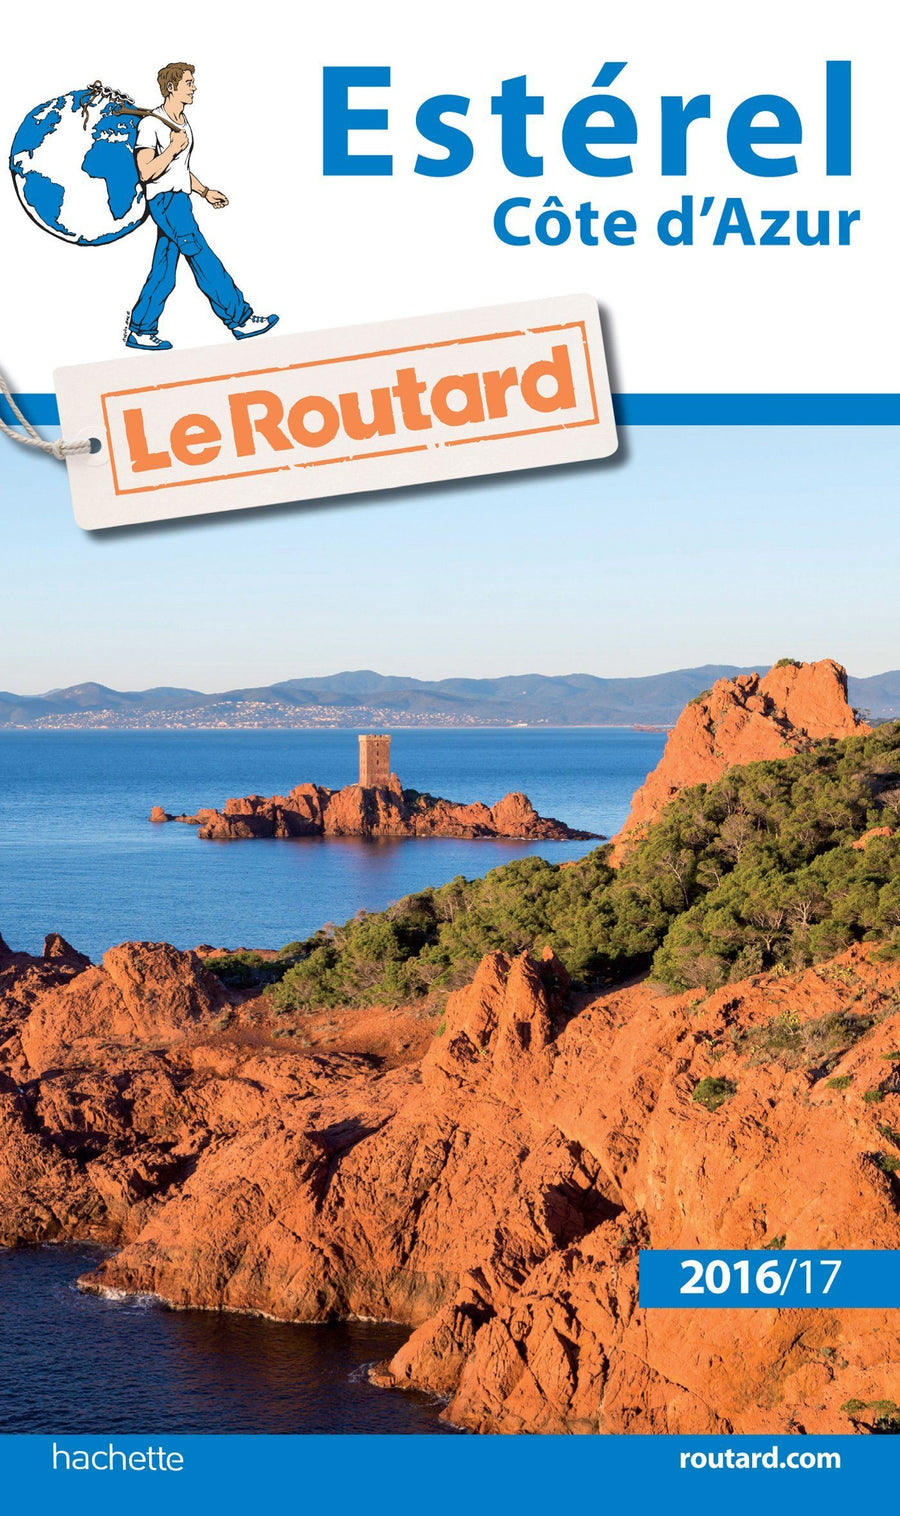 Guide du Routard - Esterel, Côte d'Azur 2016/17 | Hachette guide de voyage Hachette 